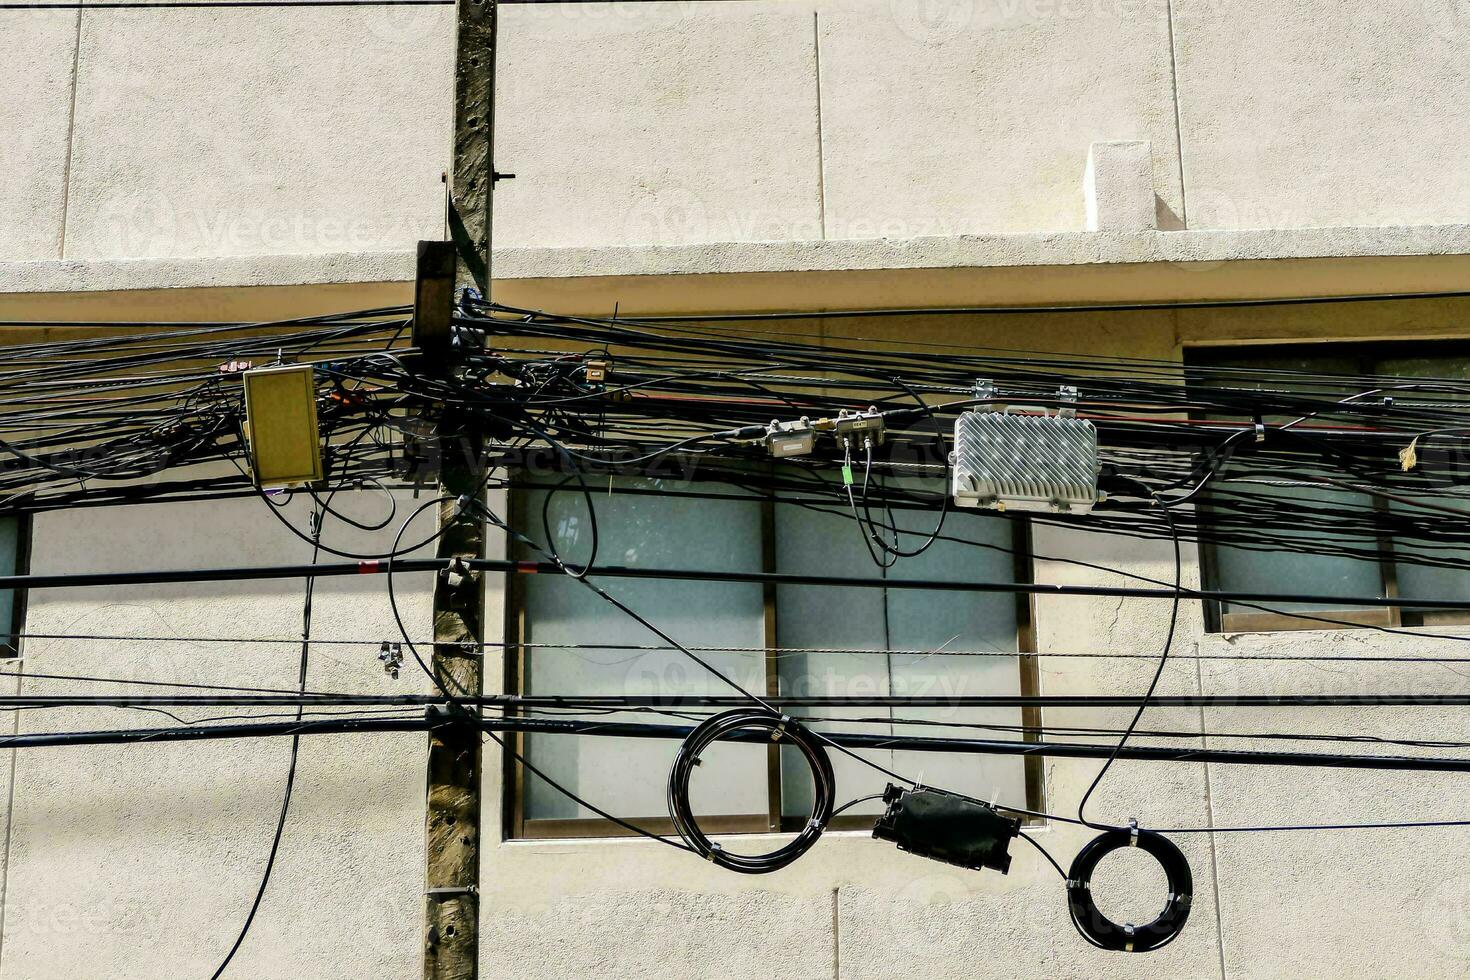 en knippa av trådar och trådar hängande från en Pol foto